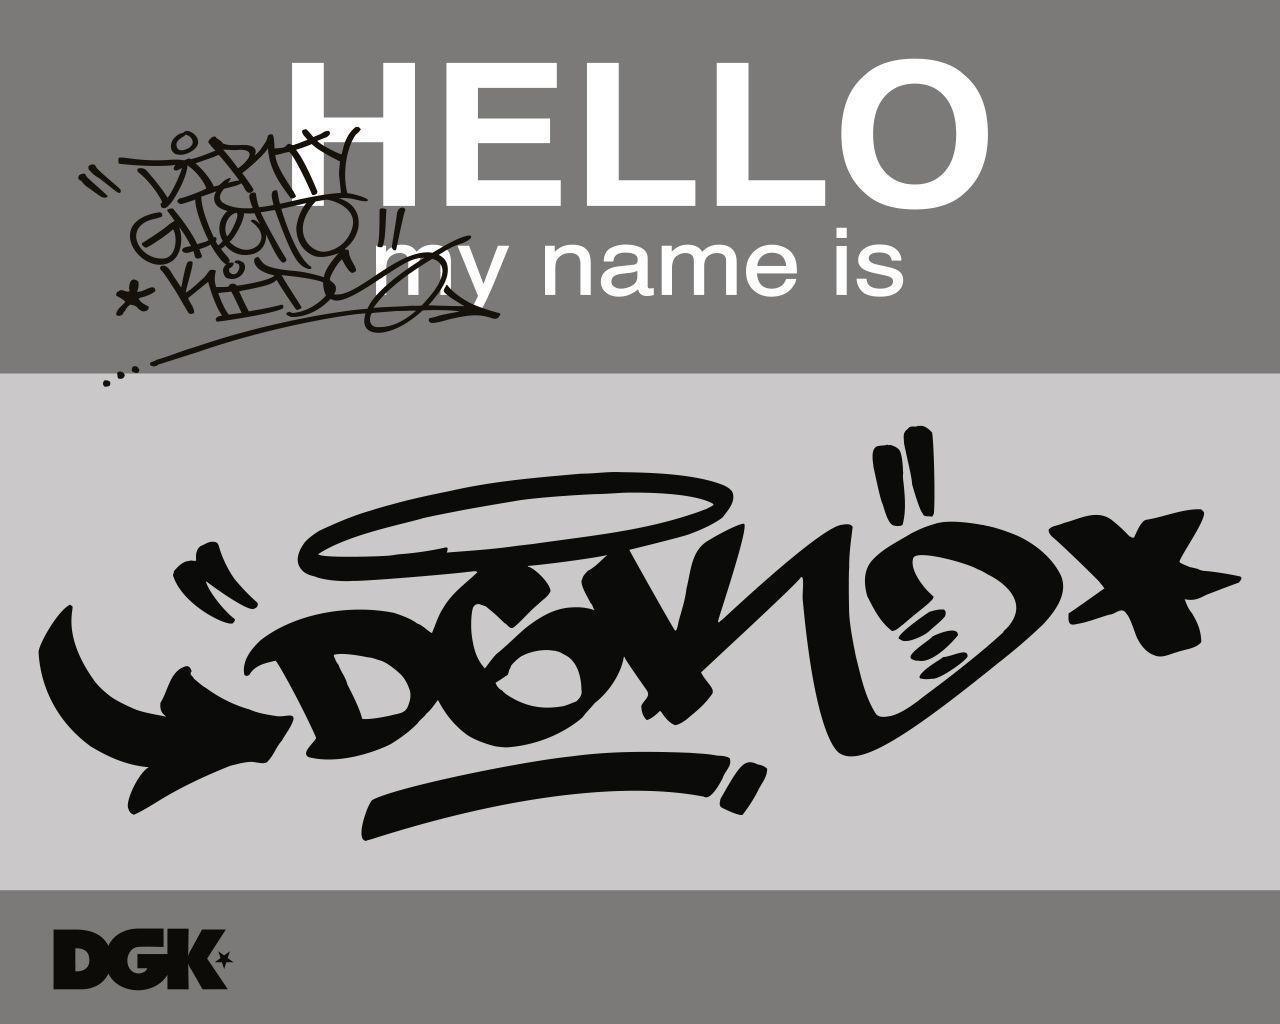 Free Hello DGK Wallpaper, Free Hello DGK HD Wallpaper, Hello DGK